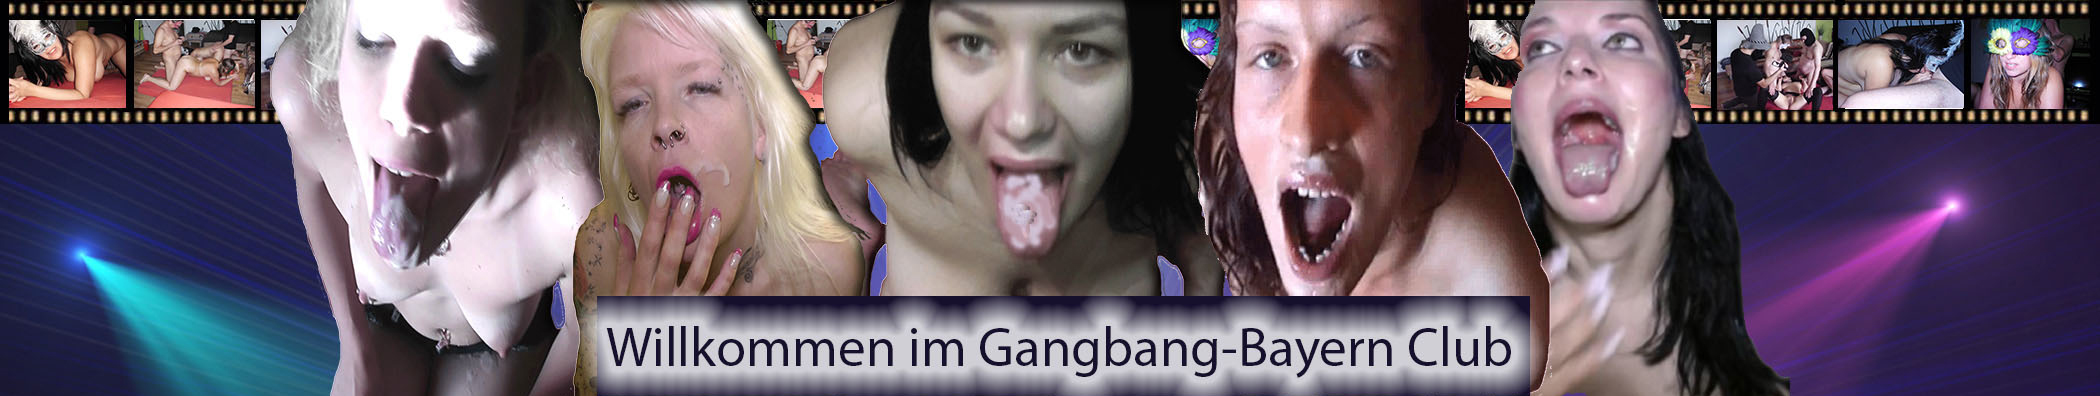 http://gangbang-bayern.net/kopf.jpg